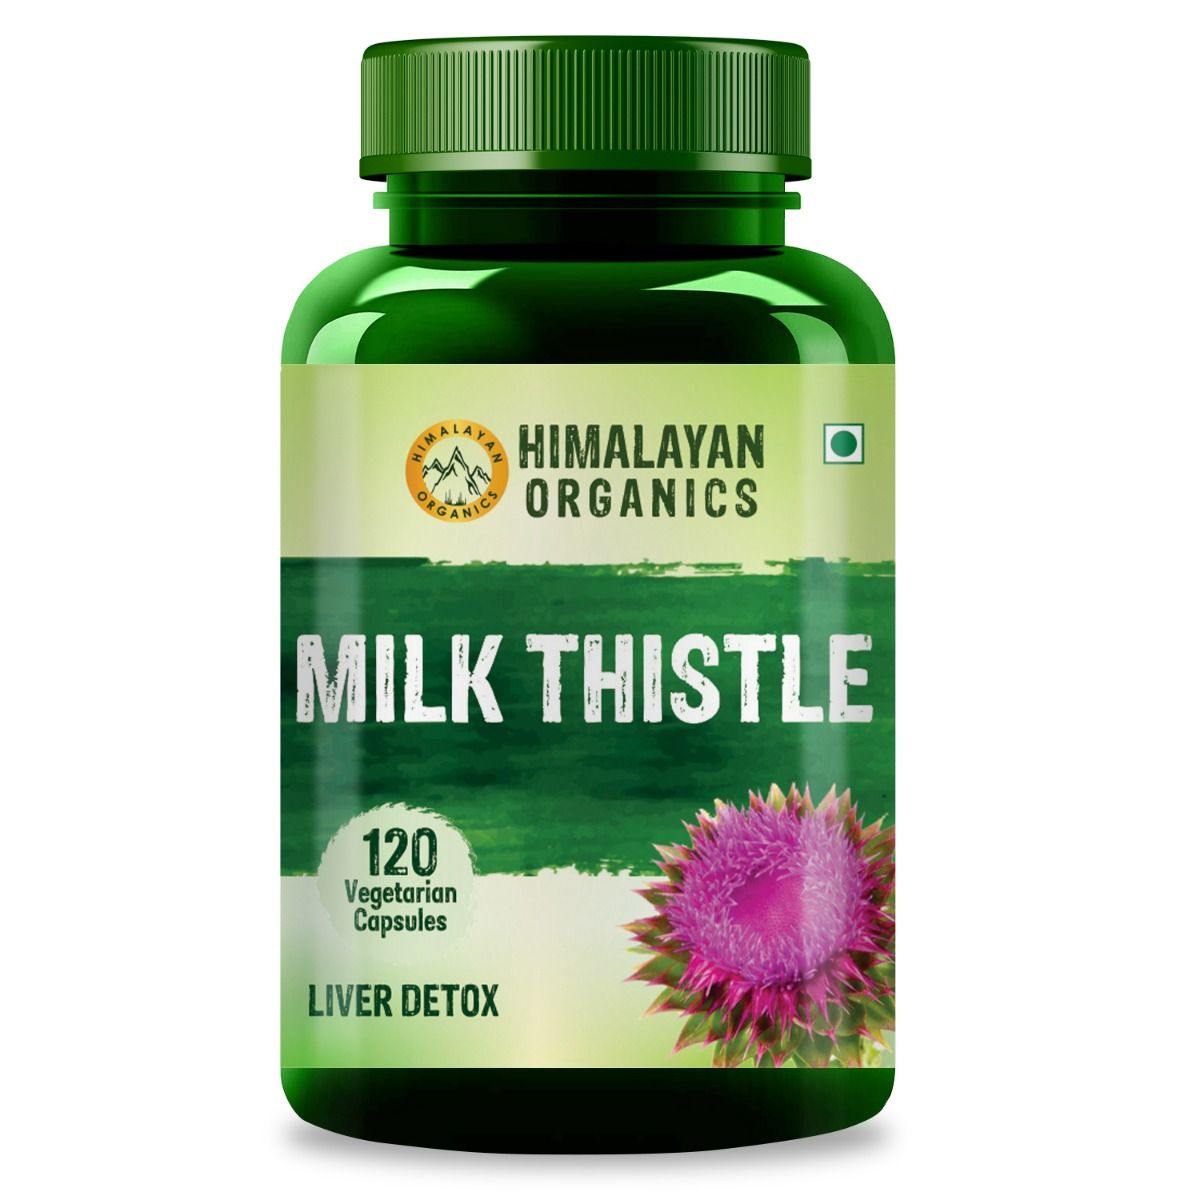 Himalayan Organics Milk Thistle, 120 Capsules, Pack of 1 